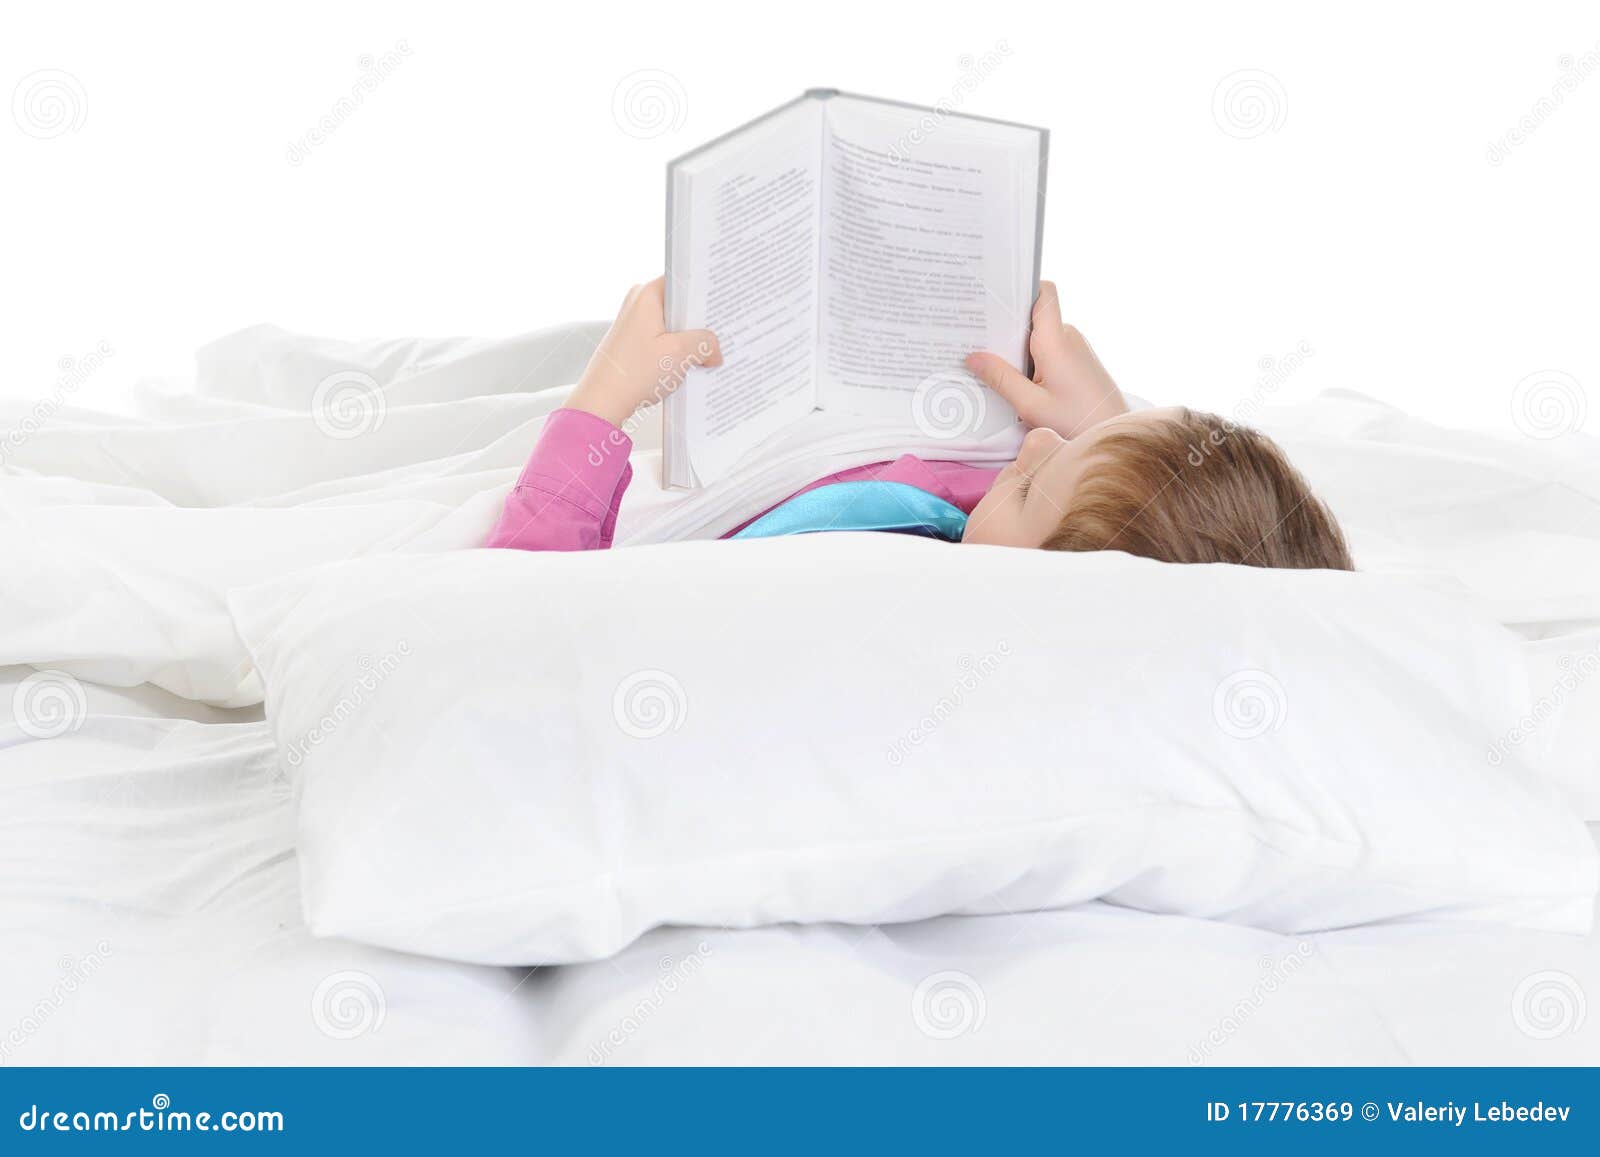 Читать лежа вредно лежа на горячем песке. Чтение лежа. Кровать книжка детская. Мальчик с книгой на кровати. Чтение лёжа ребёнок.